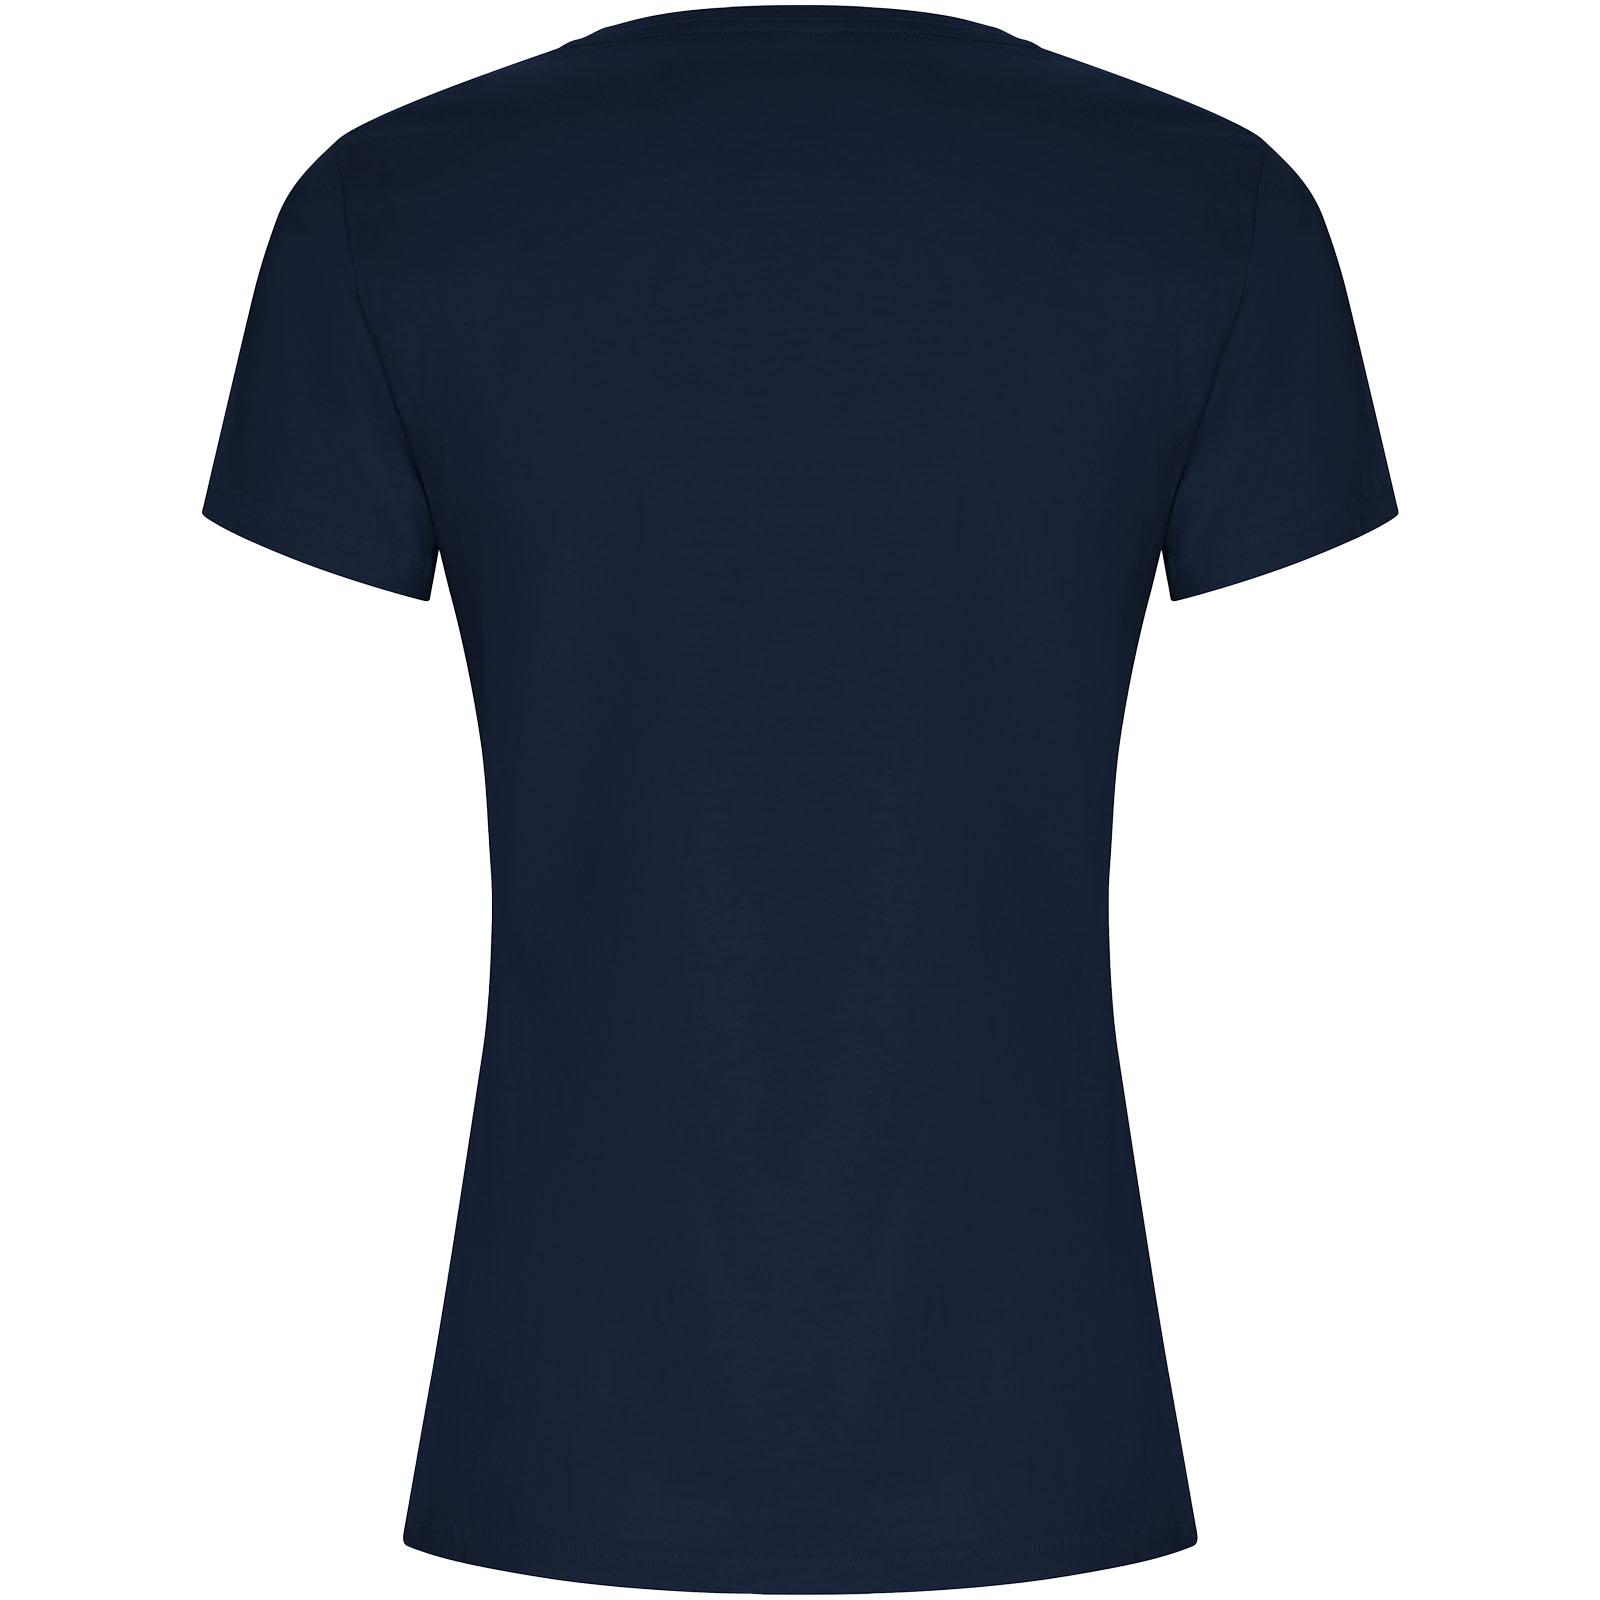 Advertising T-shirts - Golden short sleeve women's t-shirt - 1